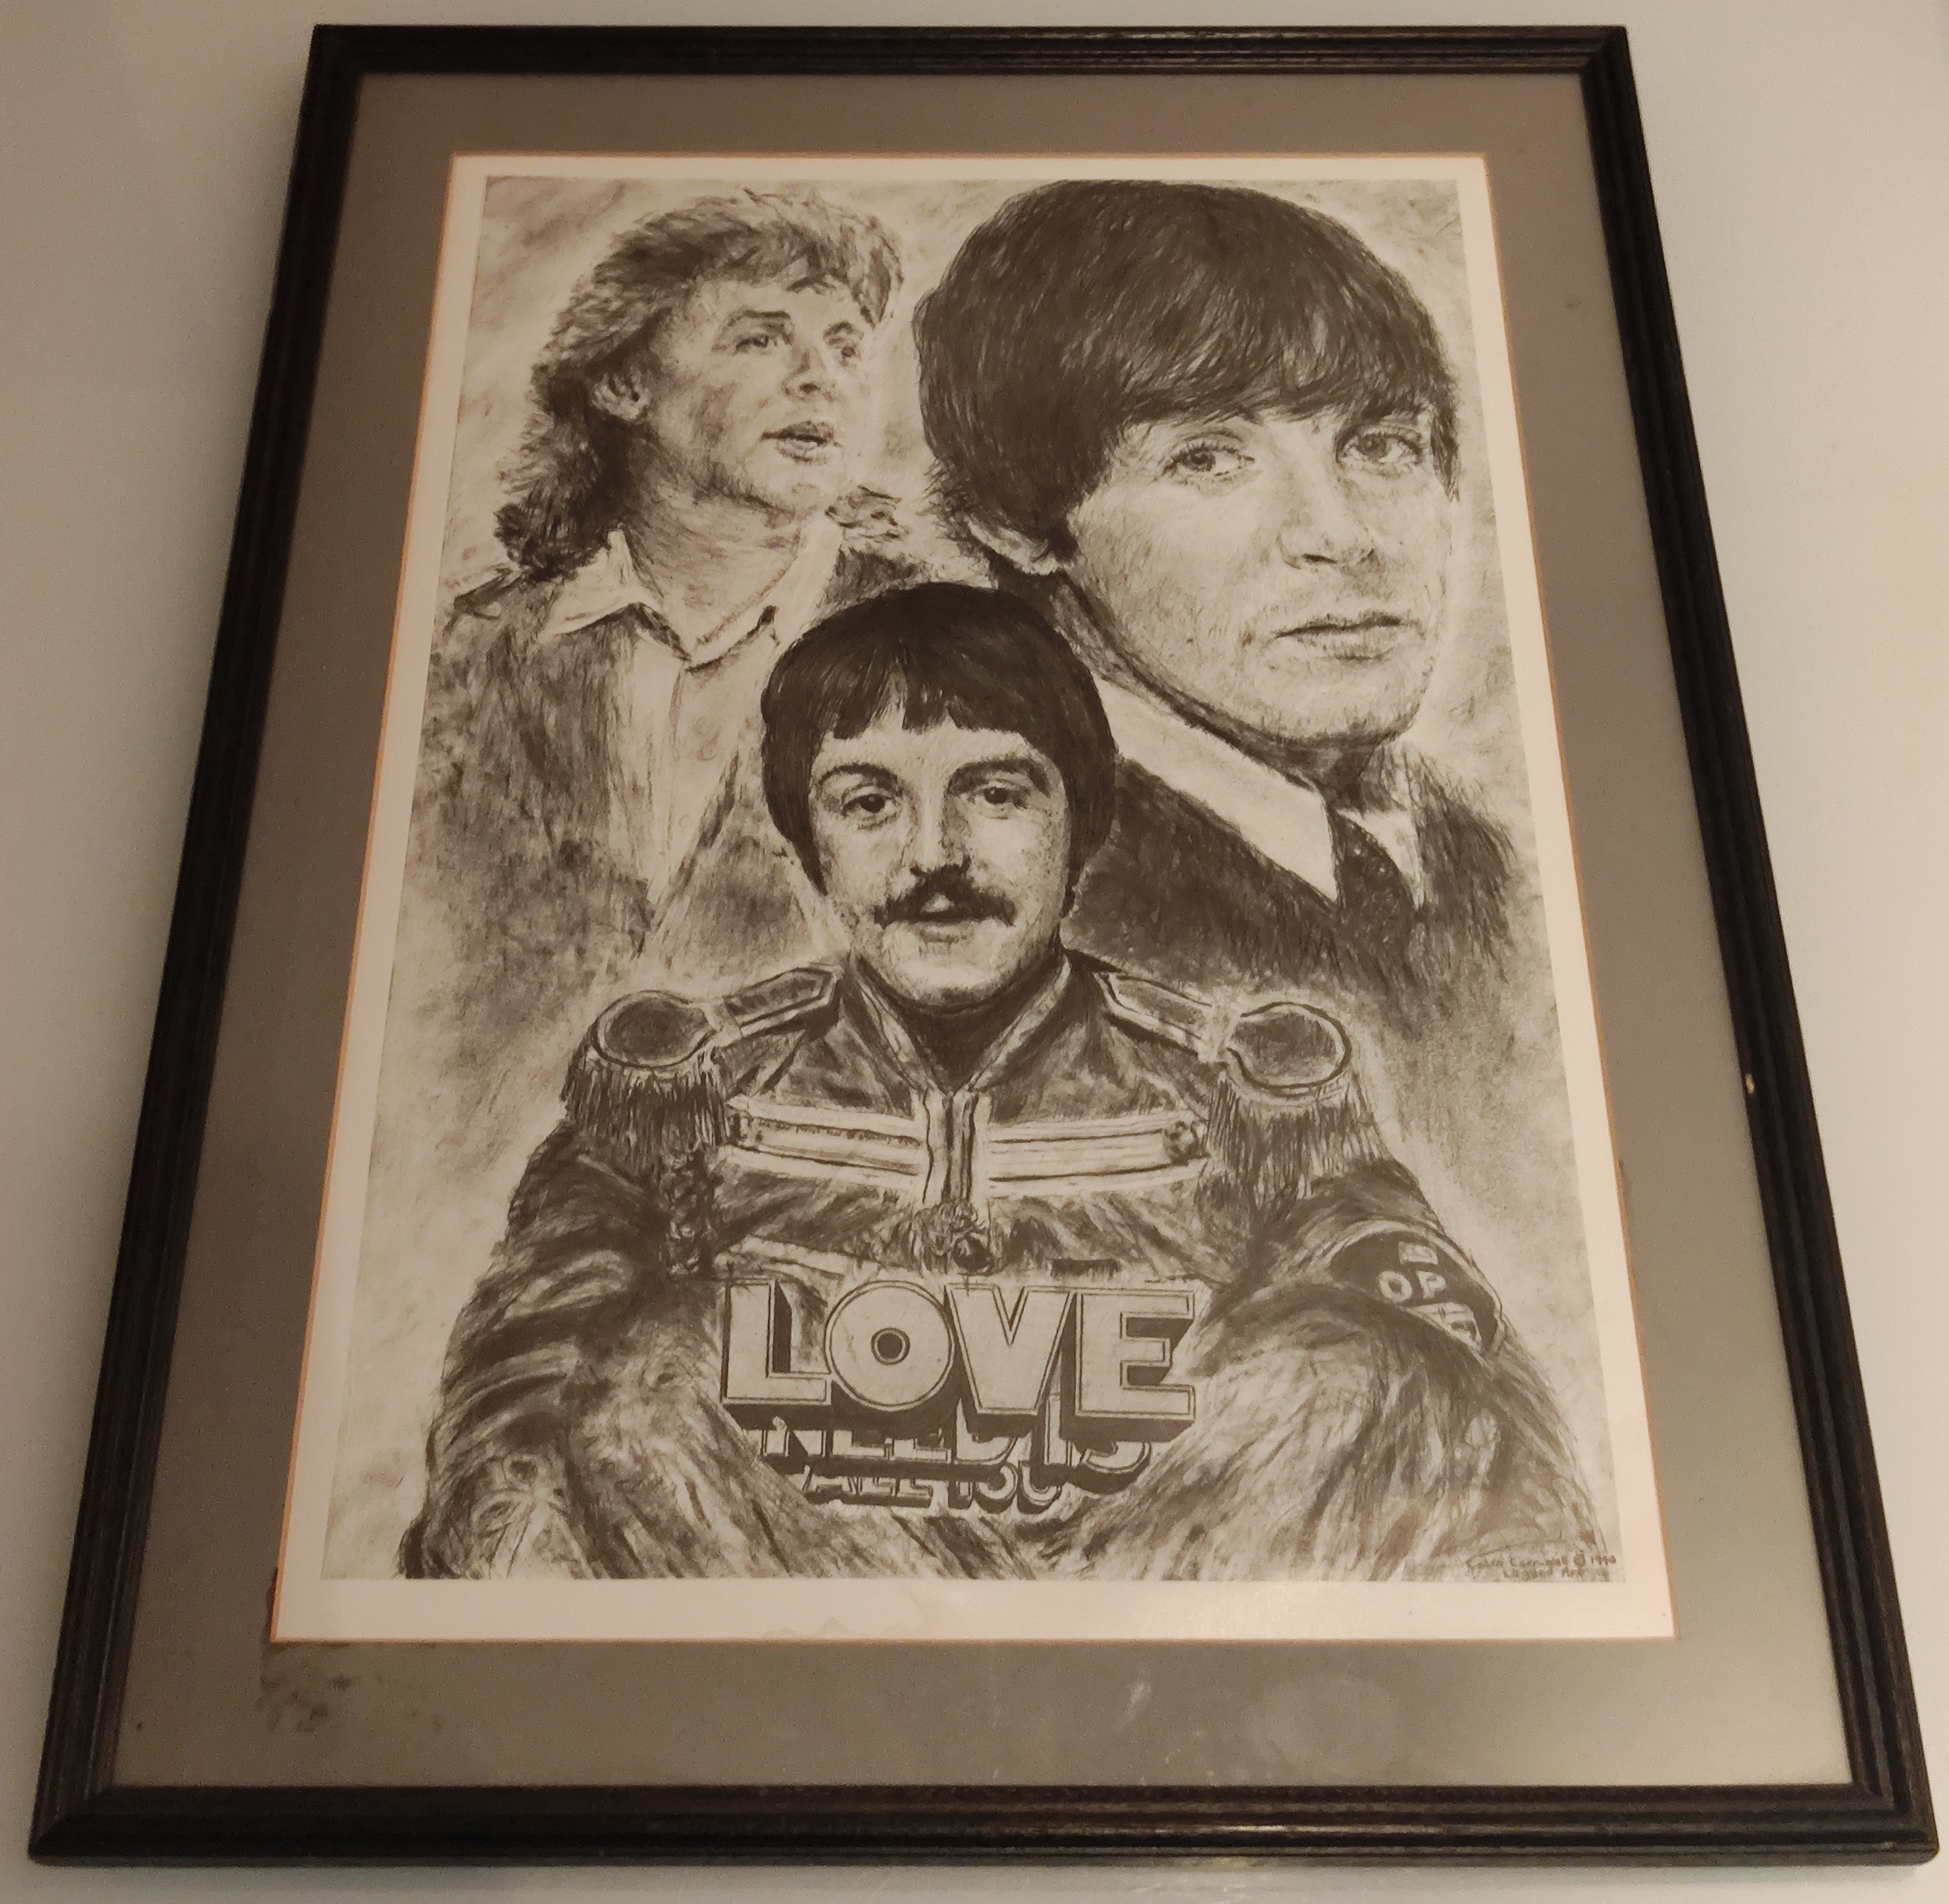 An Original Paul McCartney Print By Colin Carr-Nall – 1990 Legends Series.